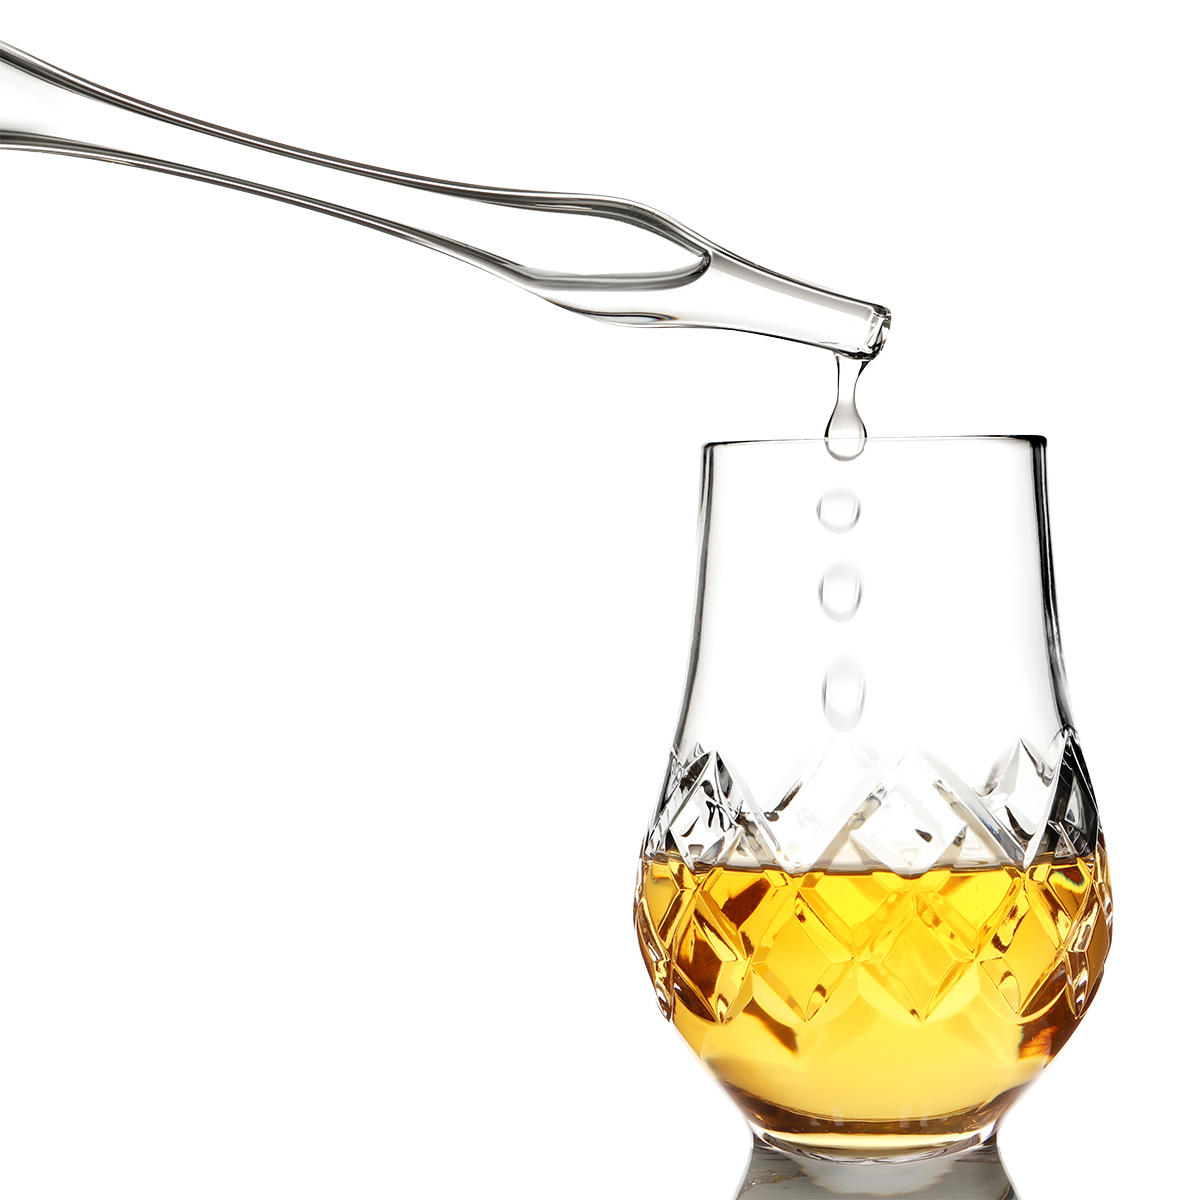 Whisky Wasser Pipette / Dropper aus Glas - Schottische Distel - Handgefertigt in Schottland